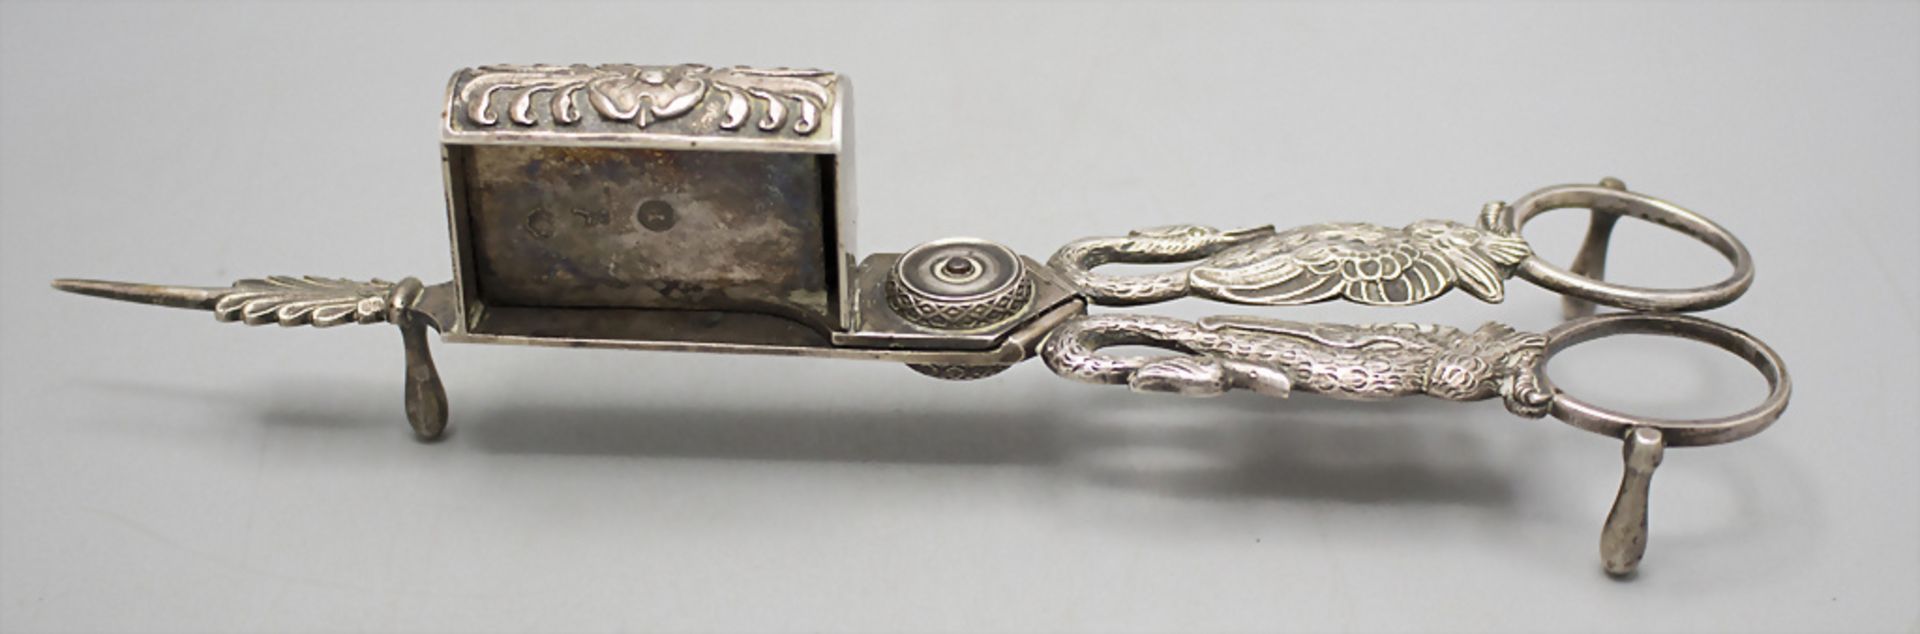 Dochtschere / Silver wick scissors, Venedig/Venice, um 1790